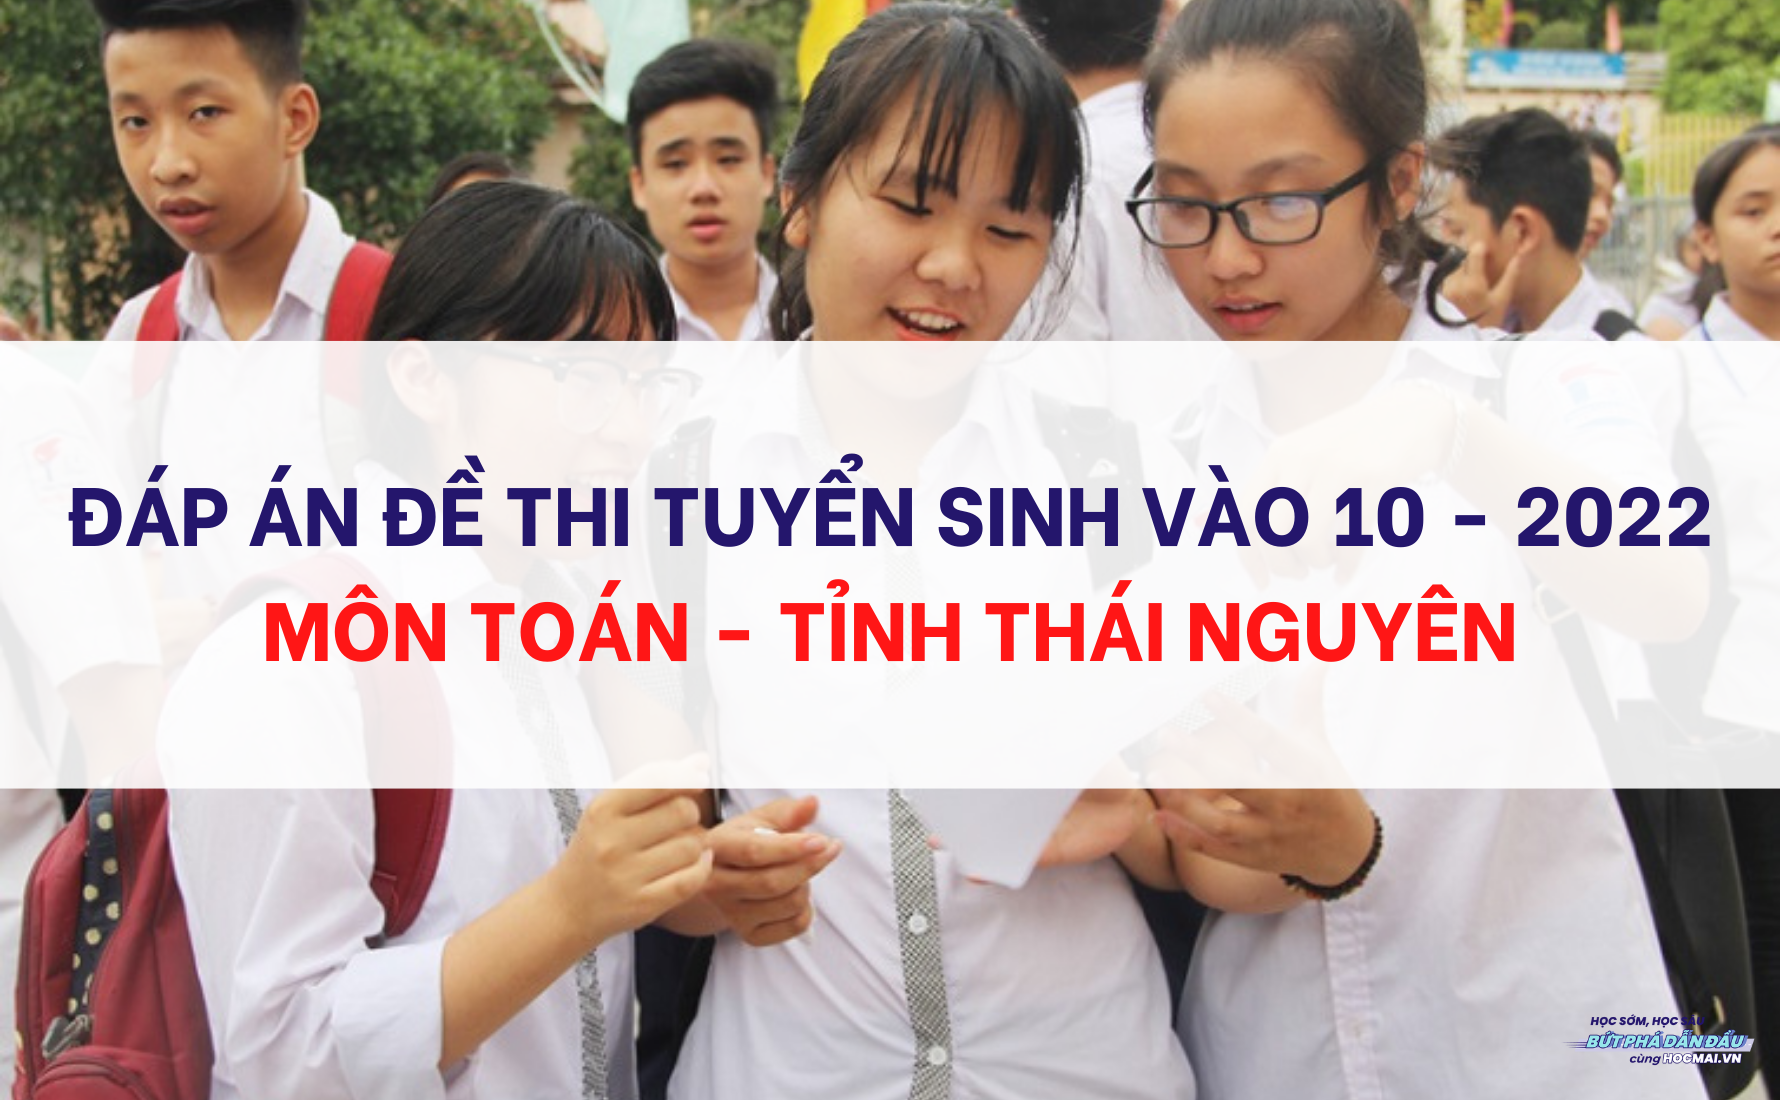 Đáp án đề thi tuyển sinh vào 10 môn Toán tỉnh Thái Nguyên năm 2022